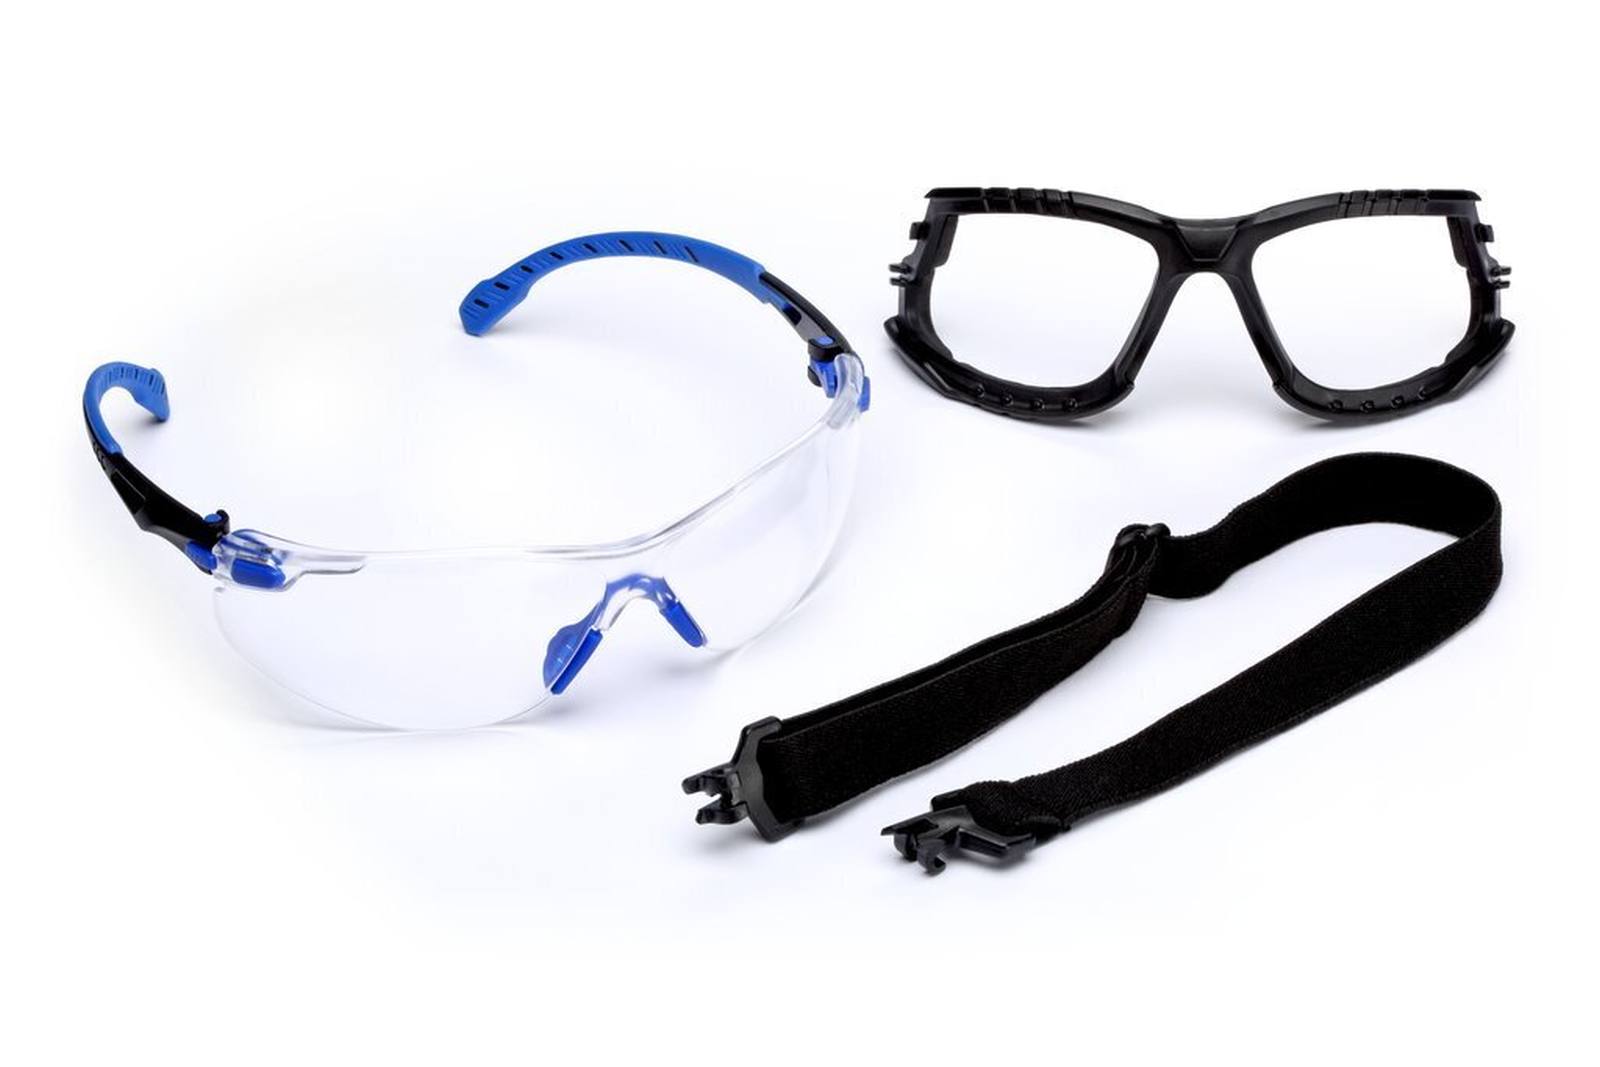 3M Gafas de protección Solus 1000, patillas azul/negro, revestimiento Scotchgard antivaho/antirayas (K&amp;N), lente transparente, montura y cinta de espuma, S1101SGAFKT-EU